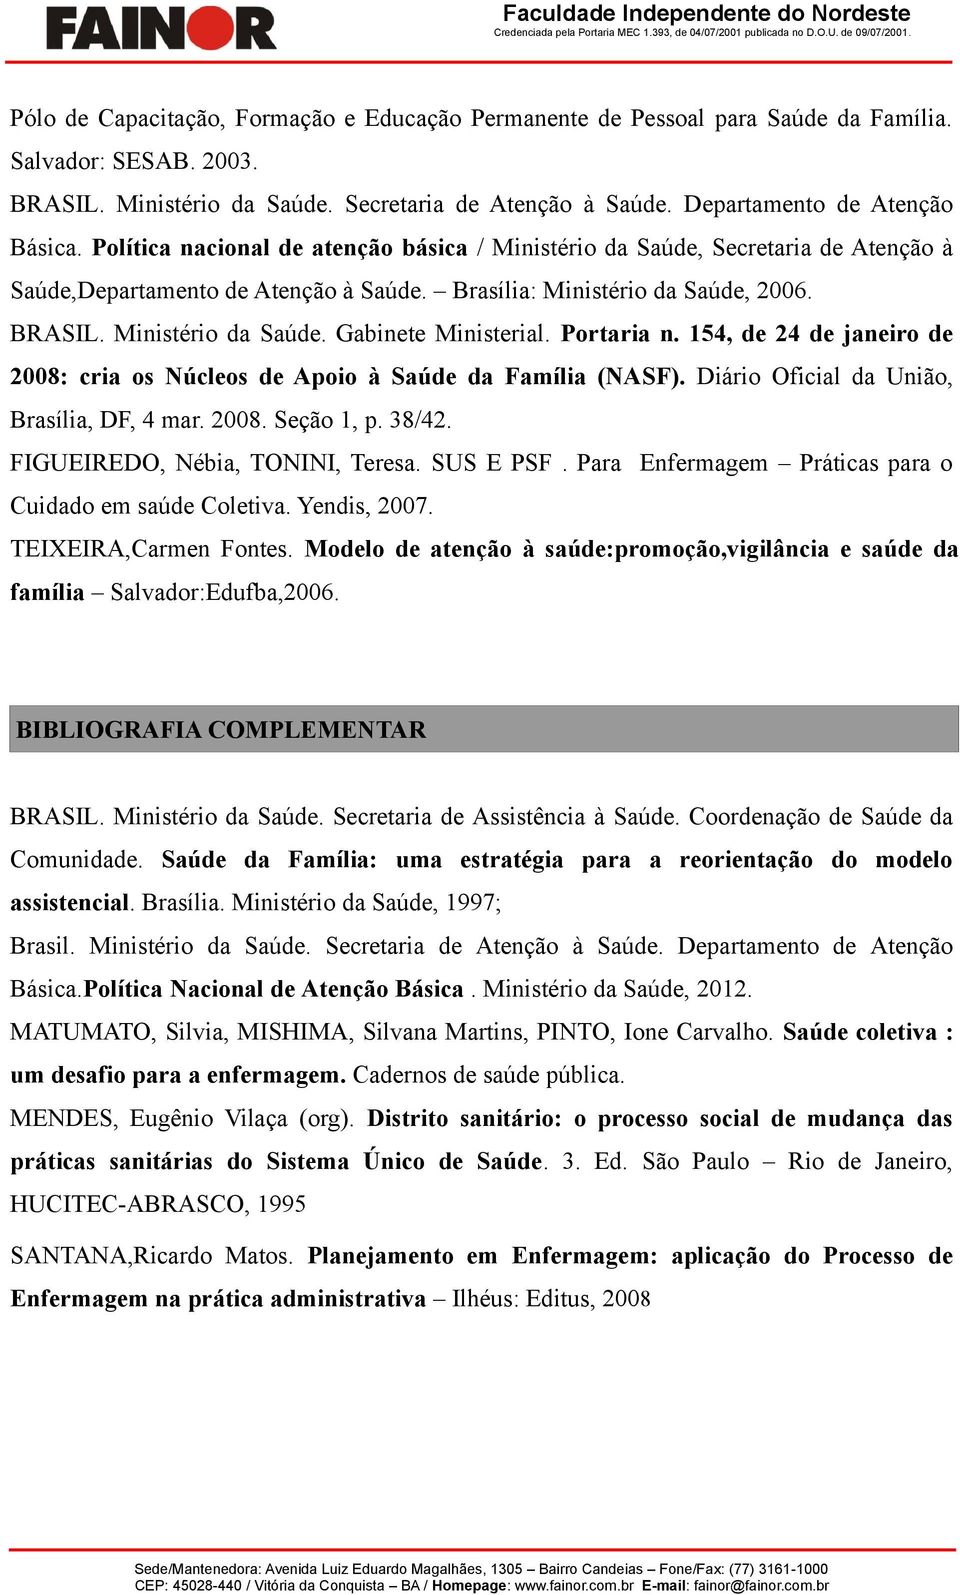 Portaria n. 154, de 24 de janeiro de 2008: cria os Núcleos de Apoio à Saúde da Família (NASF). Diário Oficial da União, Brasília, DF, 4 mar. 2008. Seção 1, p. 38/42. FIGUEIREDO, Nébia, TONINI, Teresa.